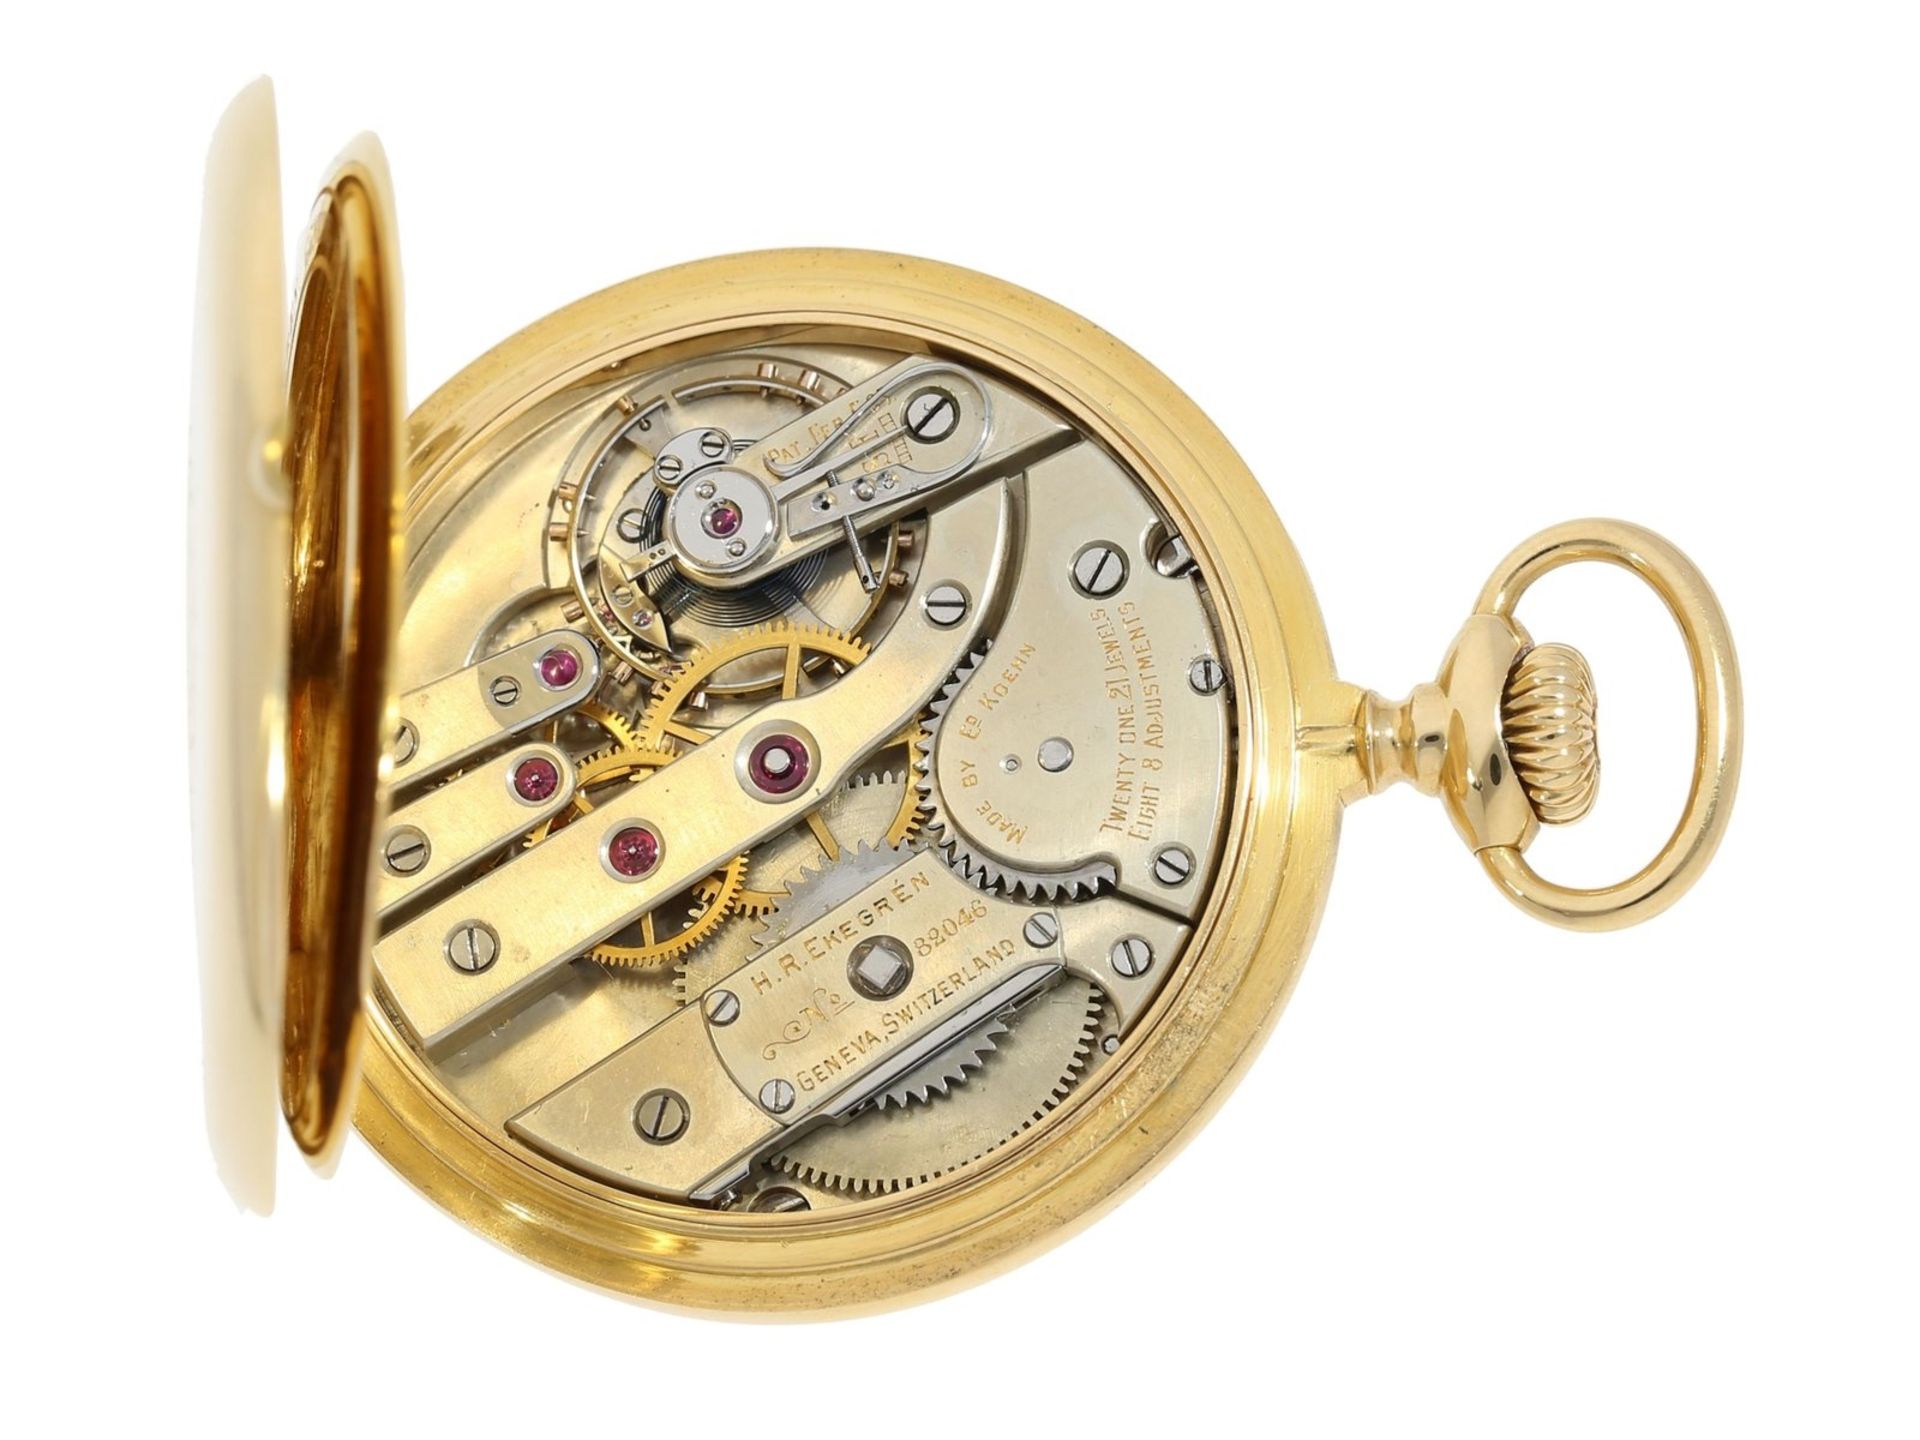 Taschenuhr: hochfeine Genfer Präzisionsuhr, H.R. Ekegren Geneve No. 82046, gefertigt für Caldwell Ph - Bild 5 aus 6